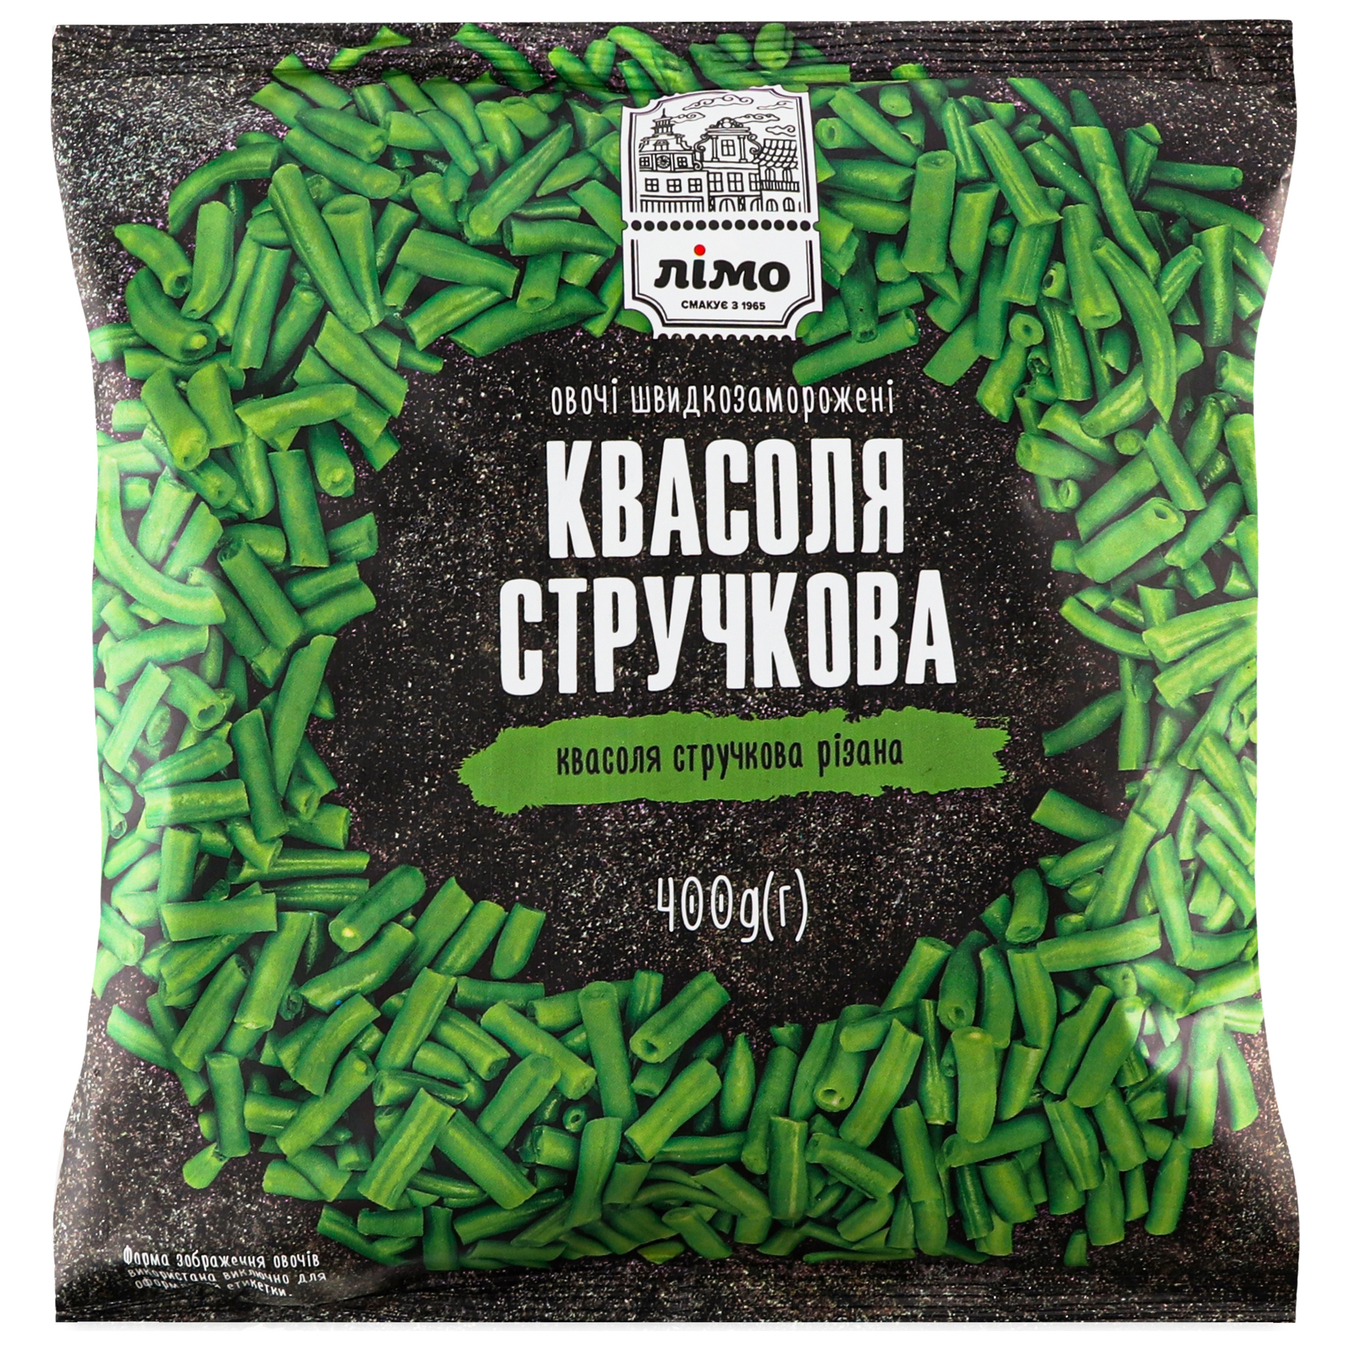 Asparagus beans 400g